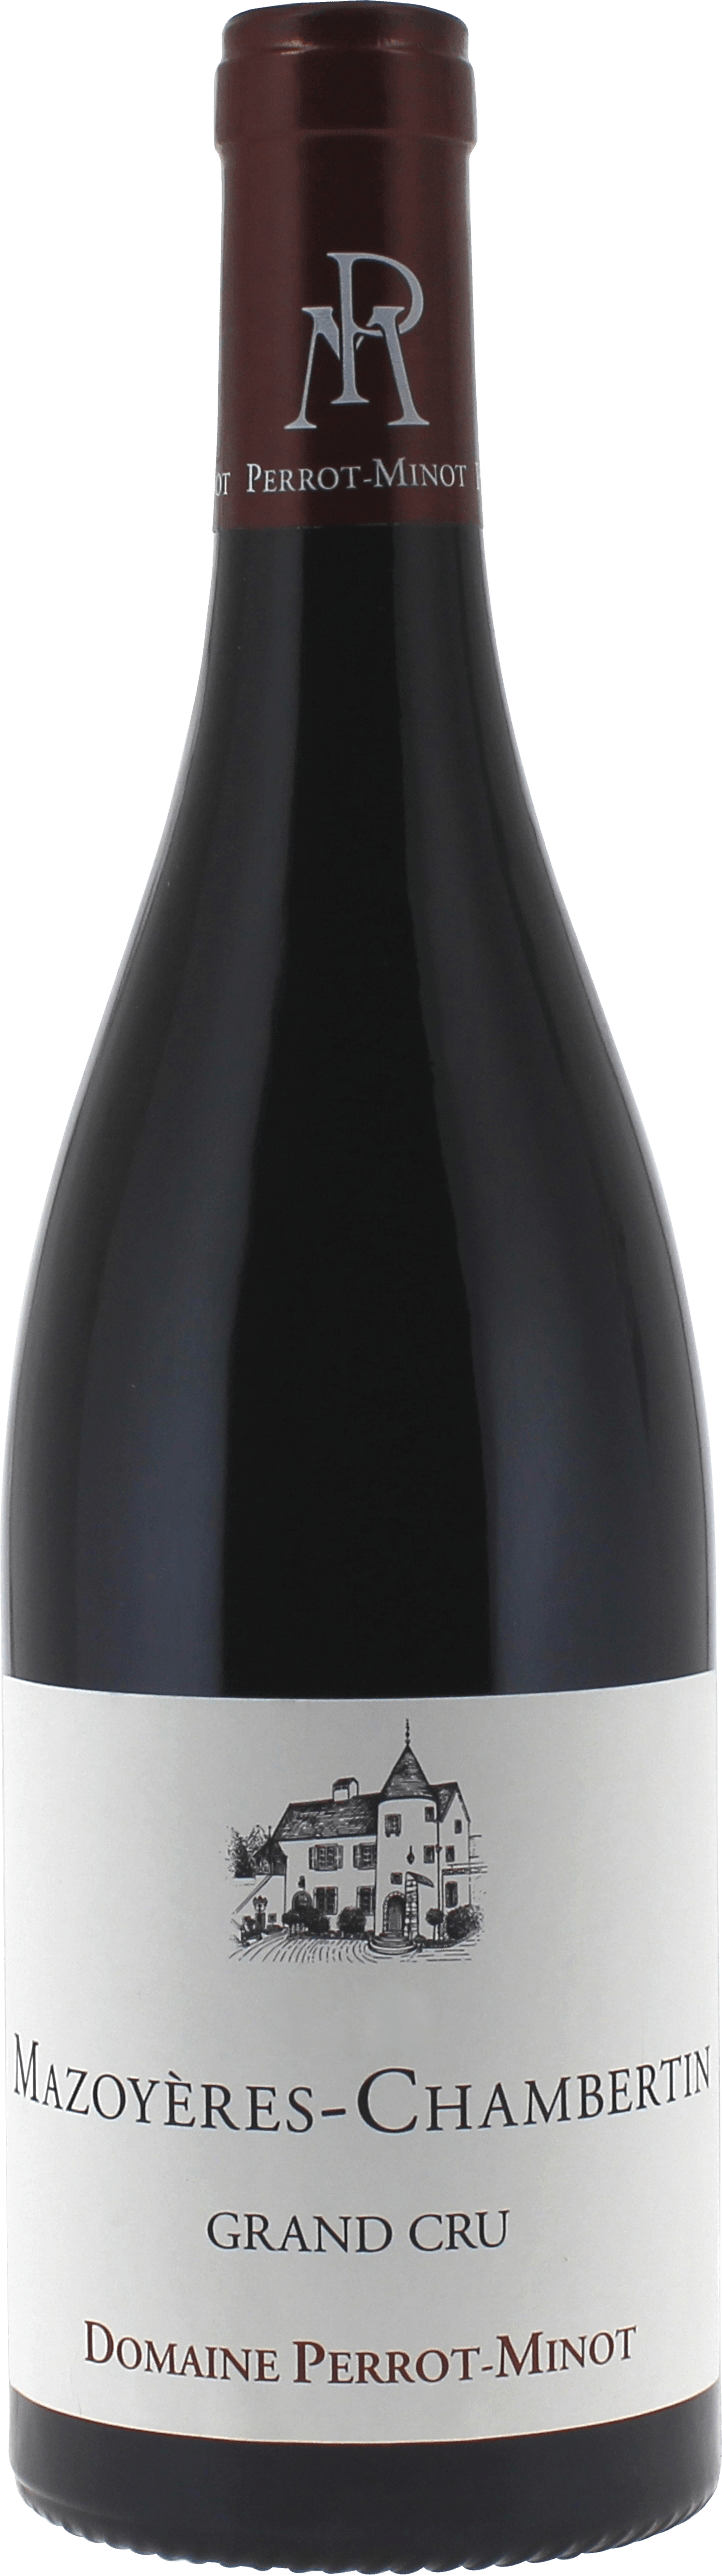 Mazoyres-chambertin grand cru 2015 Domaine PERROT-MINOT, Bourgogne rouge